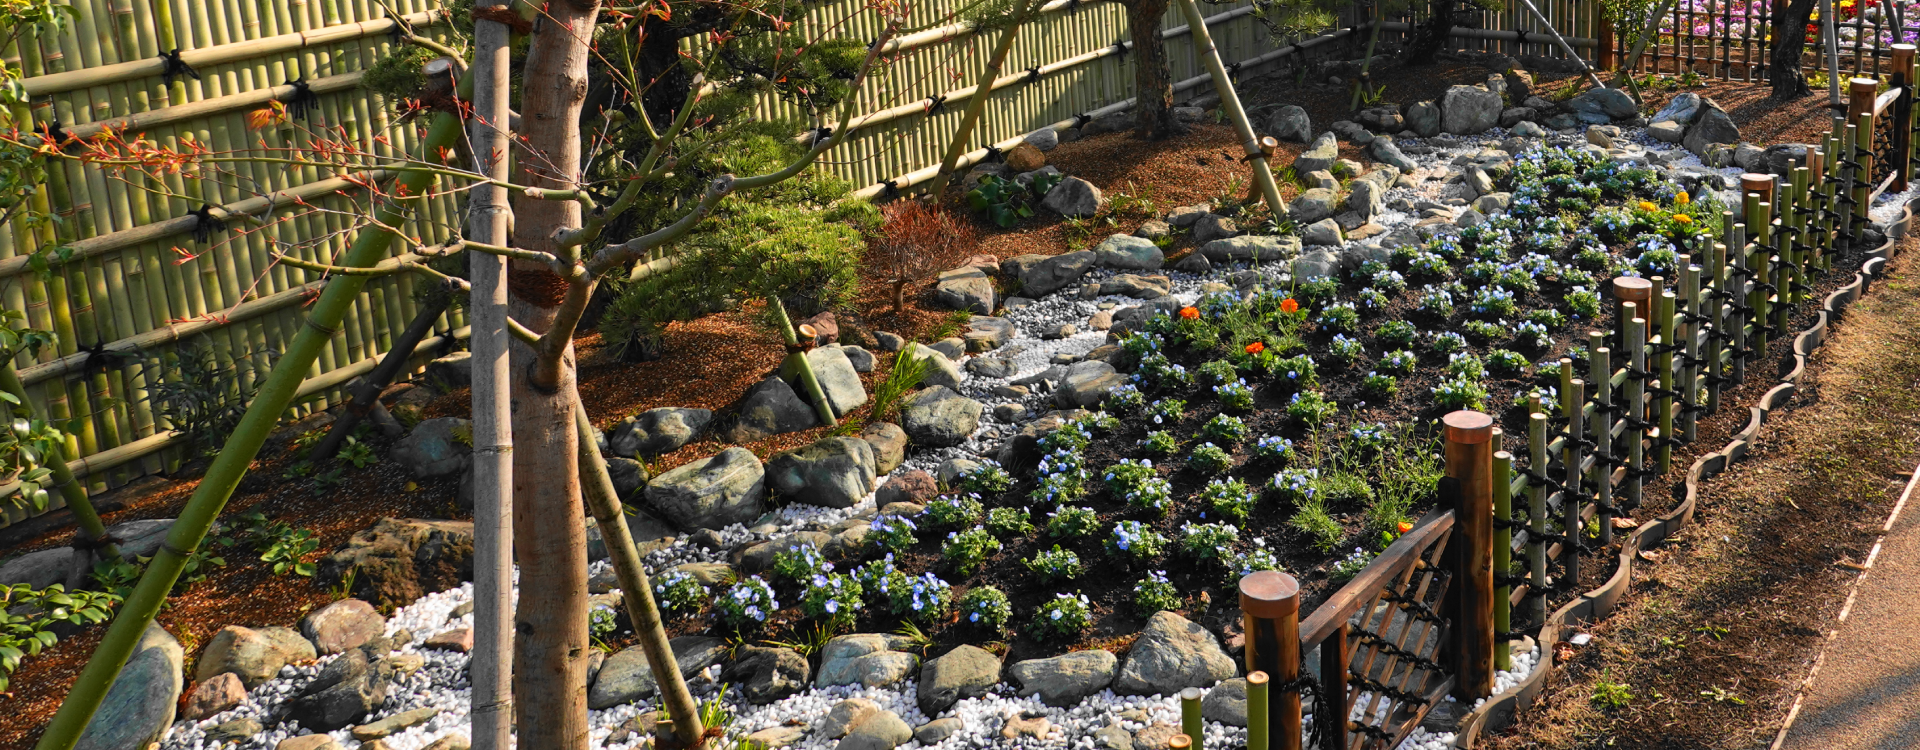 和洋庭園の設計・施工、公共緑化